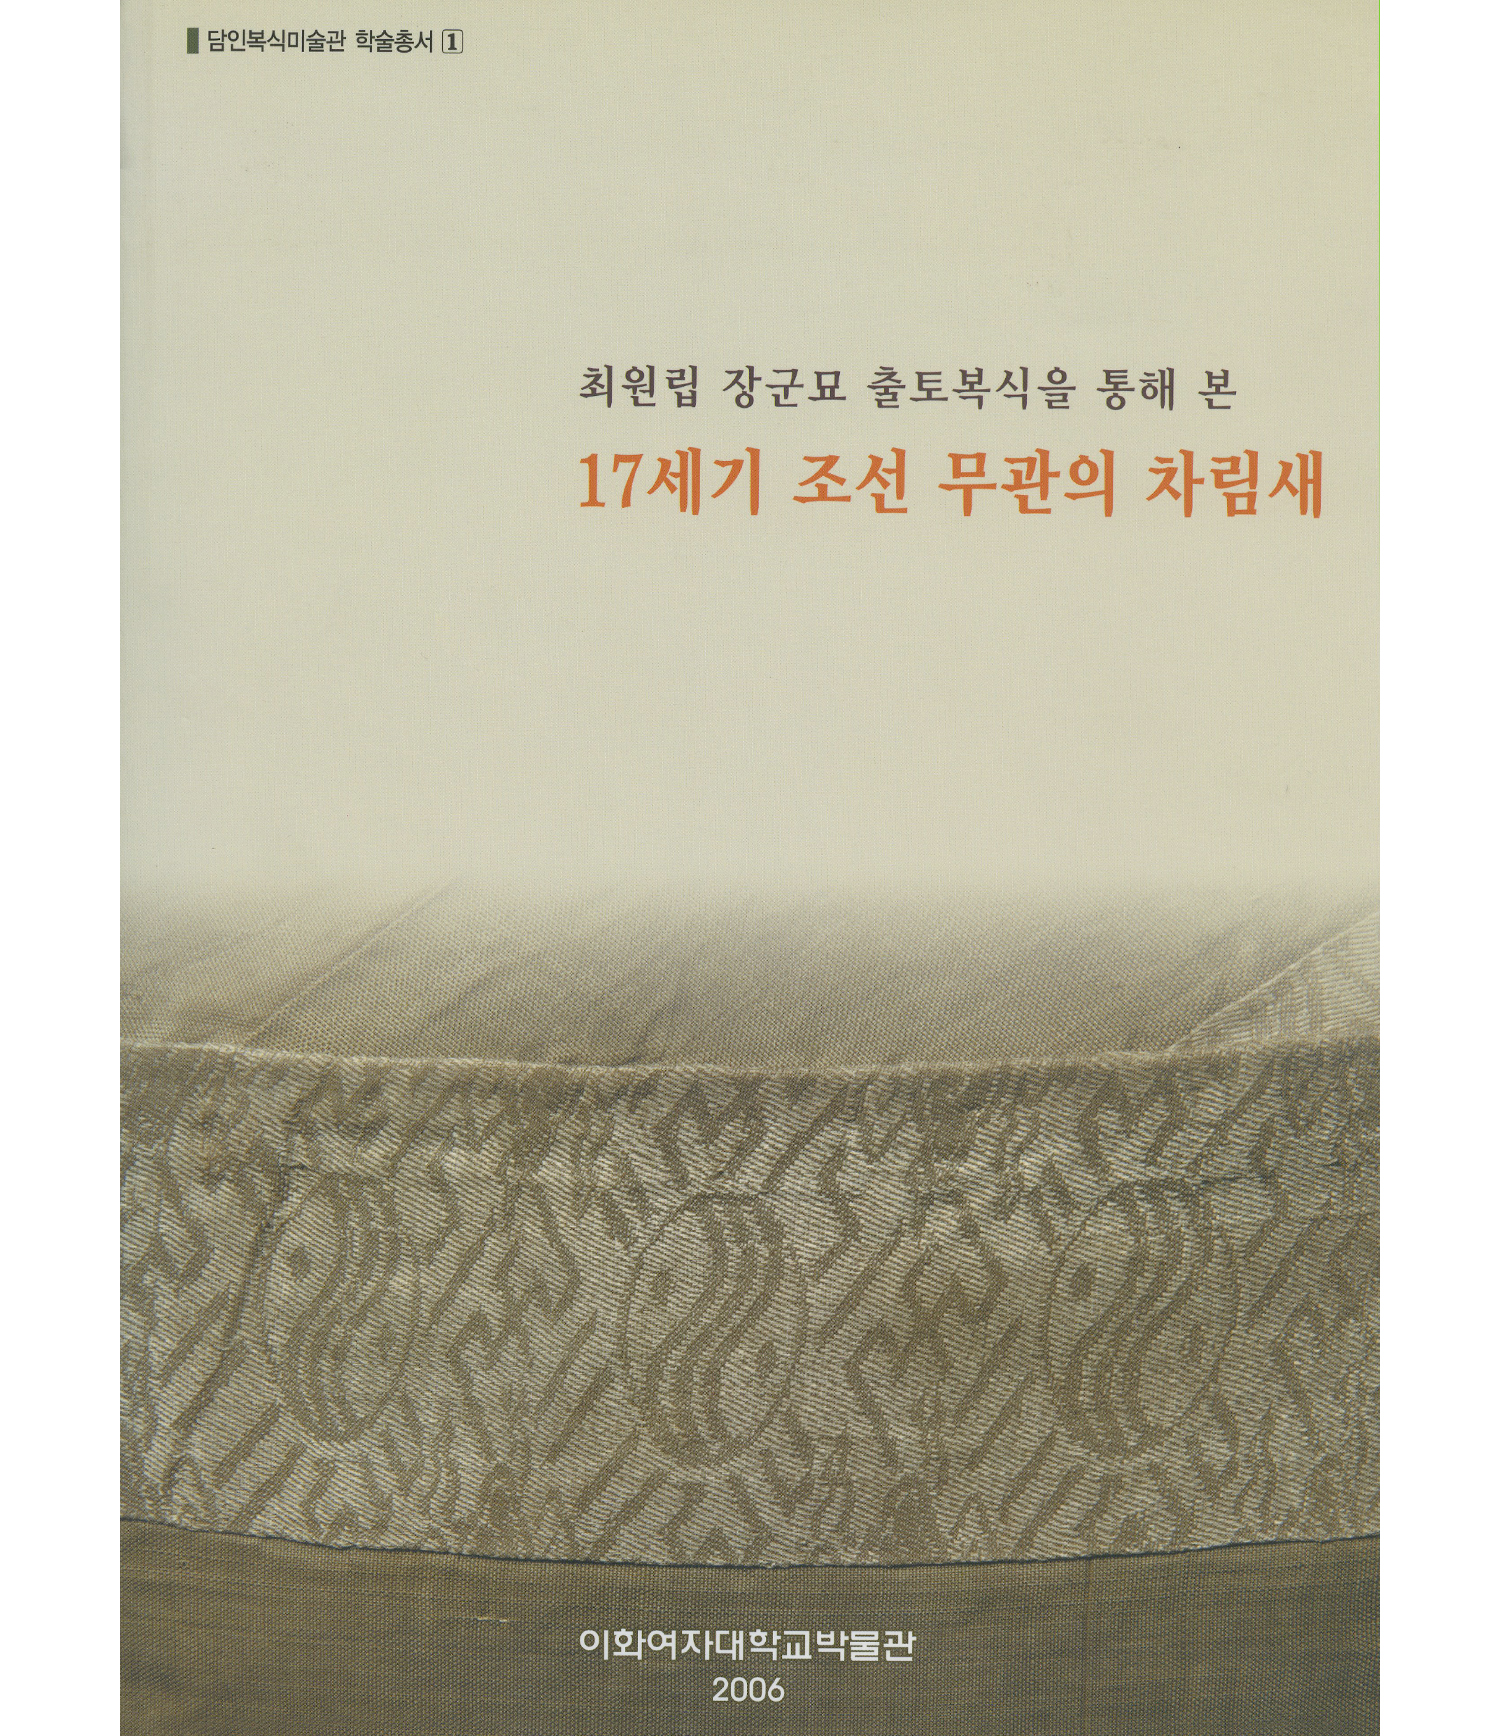 [담인복식미술관 특별전] 17세기 조선 무관의 차림새-최원립묘 출토 복식전